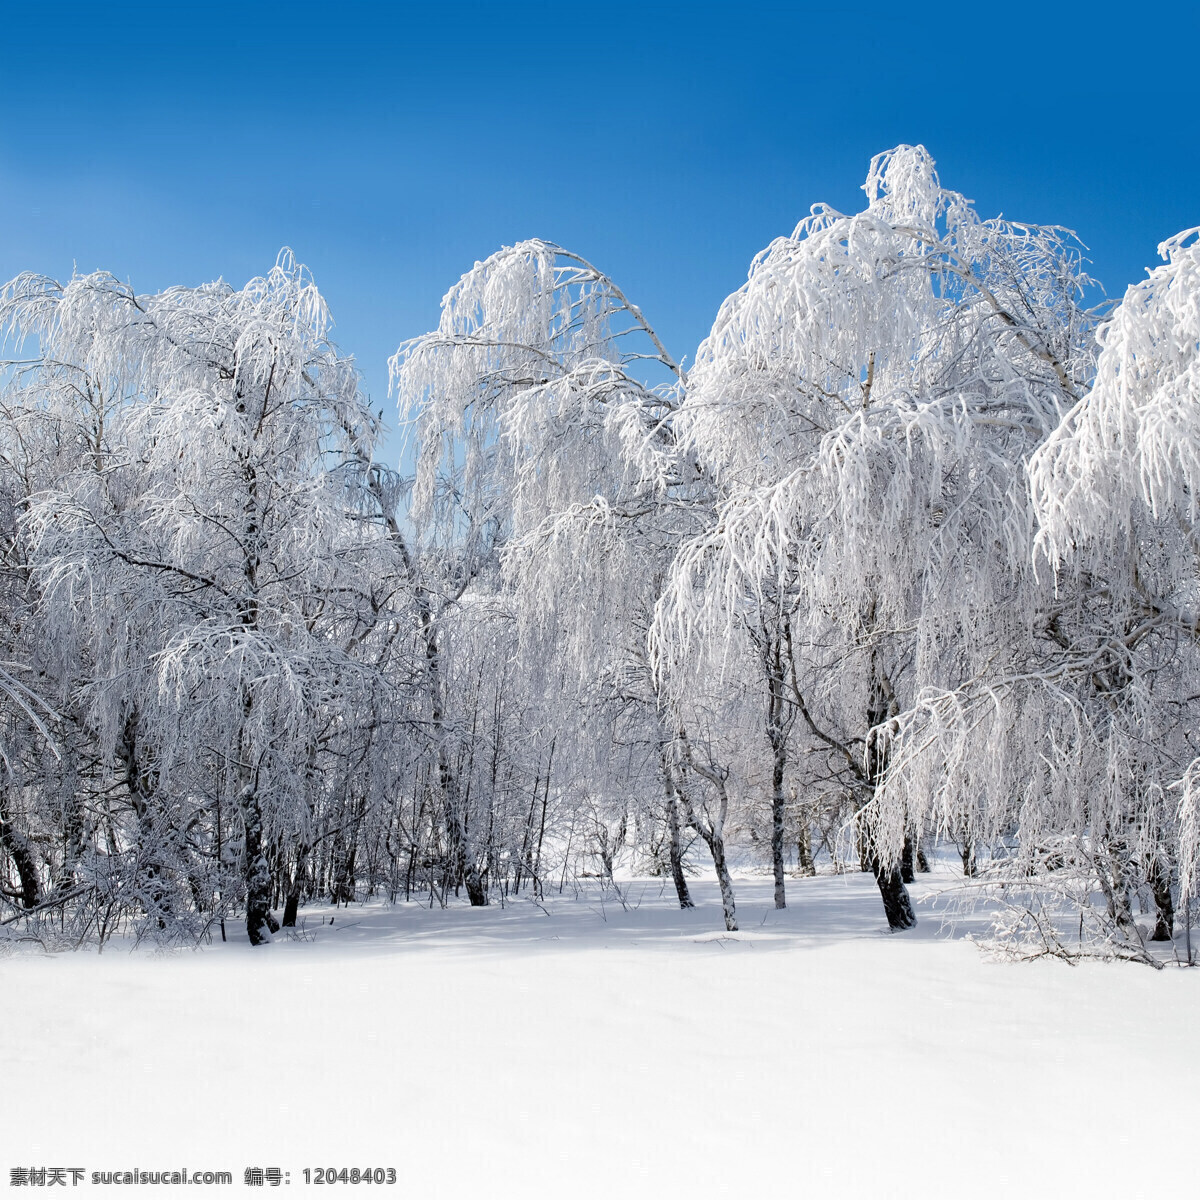 冬天 积雪 美景 冬季 雪景 美丽风景 景色 雪地 森林 树木 山水风景 风景图片